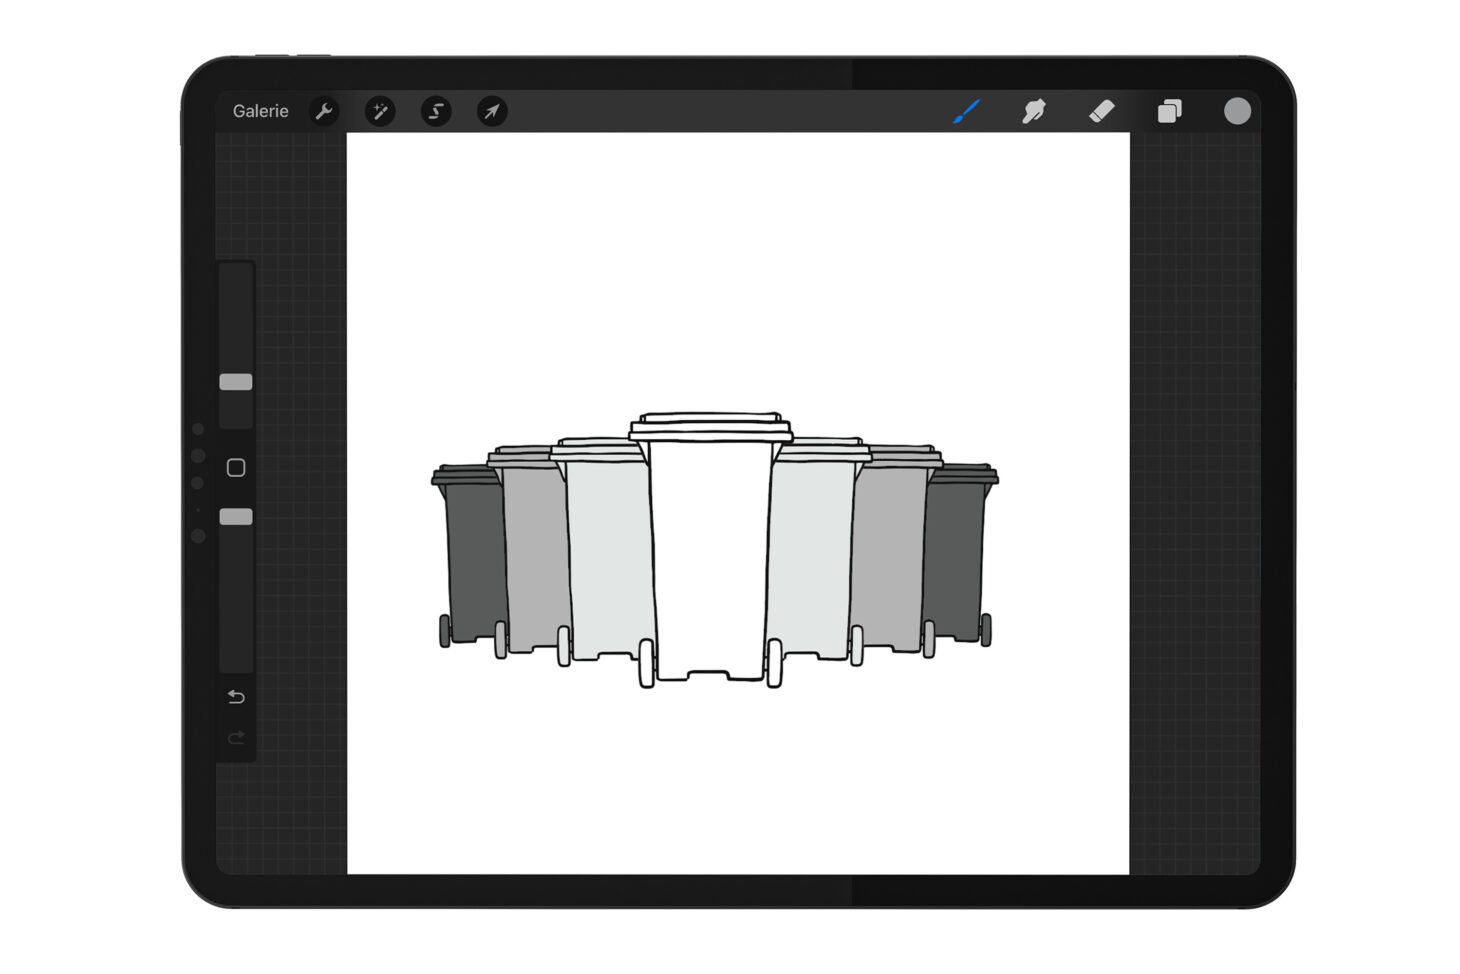 Mockup iPad: Aufstellung von 7 Mülltonnen in unterschiedlichen Grau-Tönen